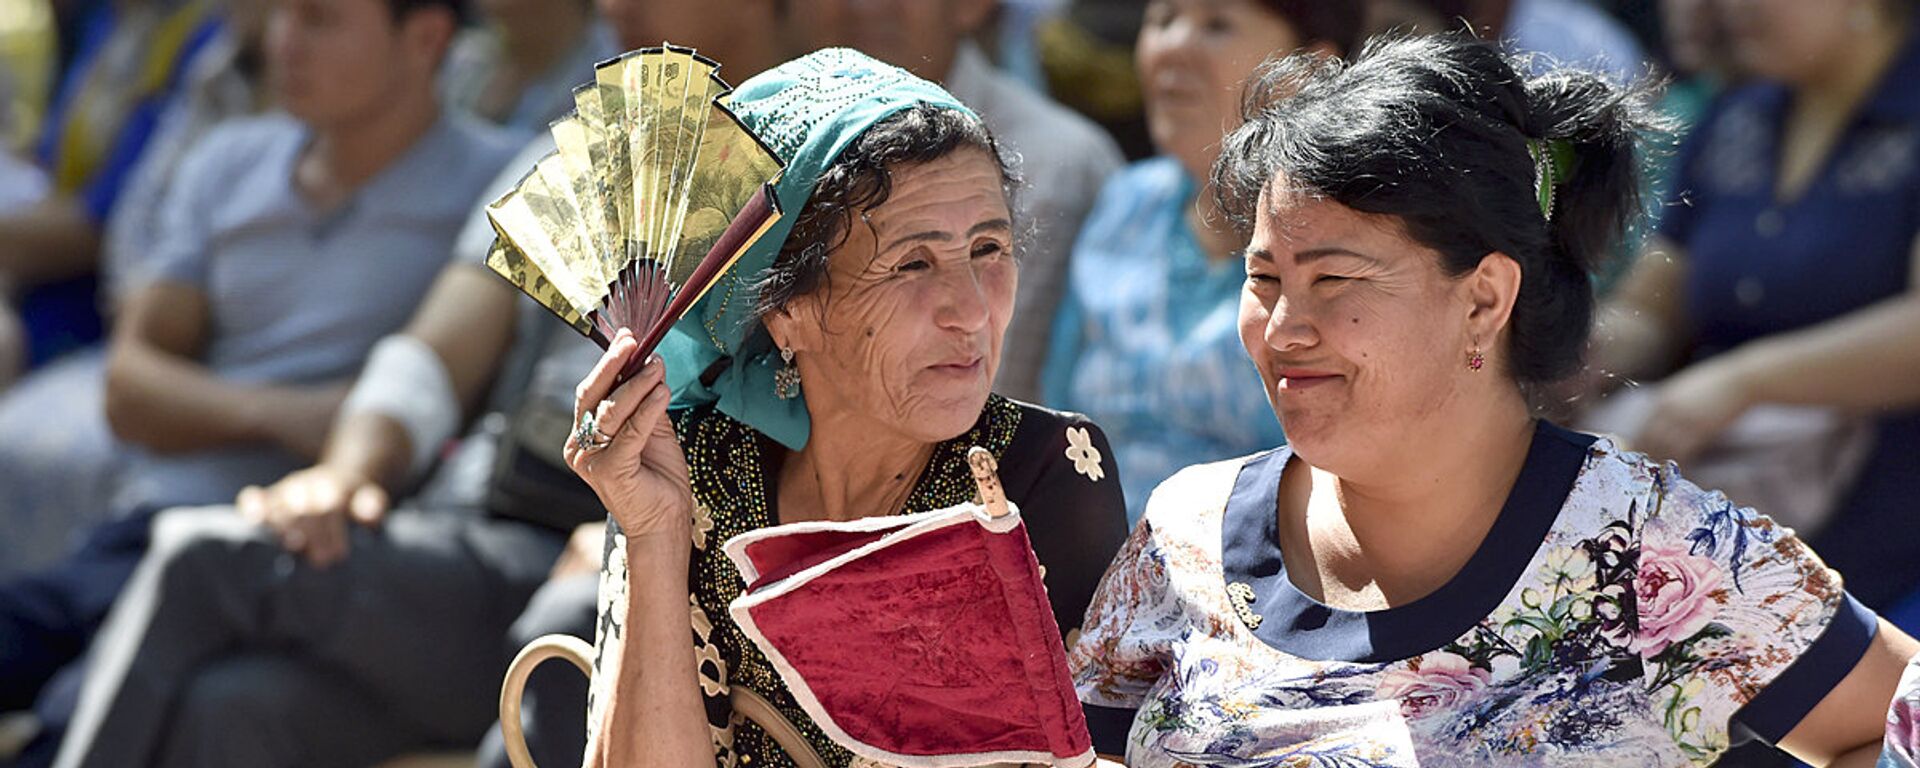 Узбекские женщины беседуют на улице - Sputnik Узбекистан, 1920, 09.06.2021